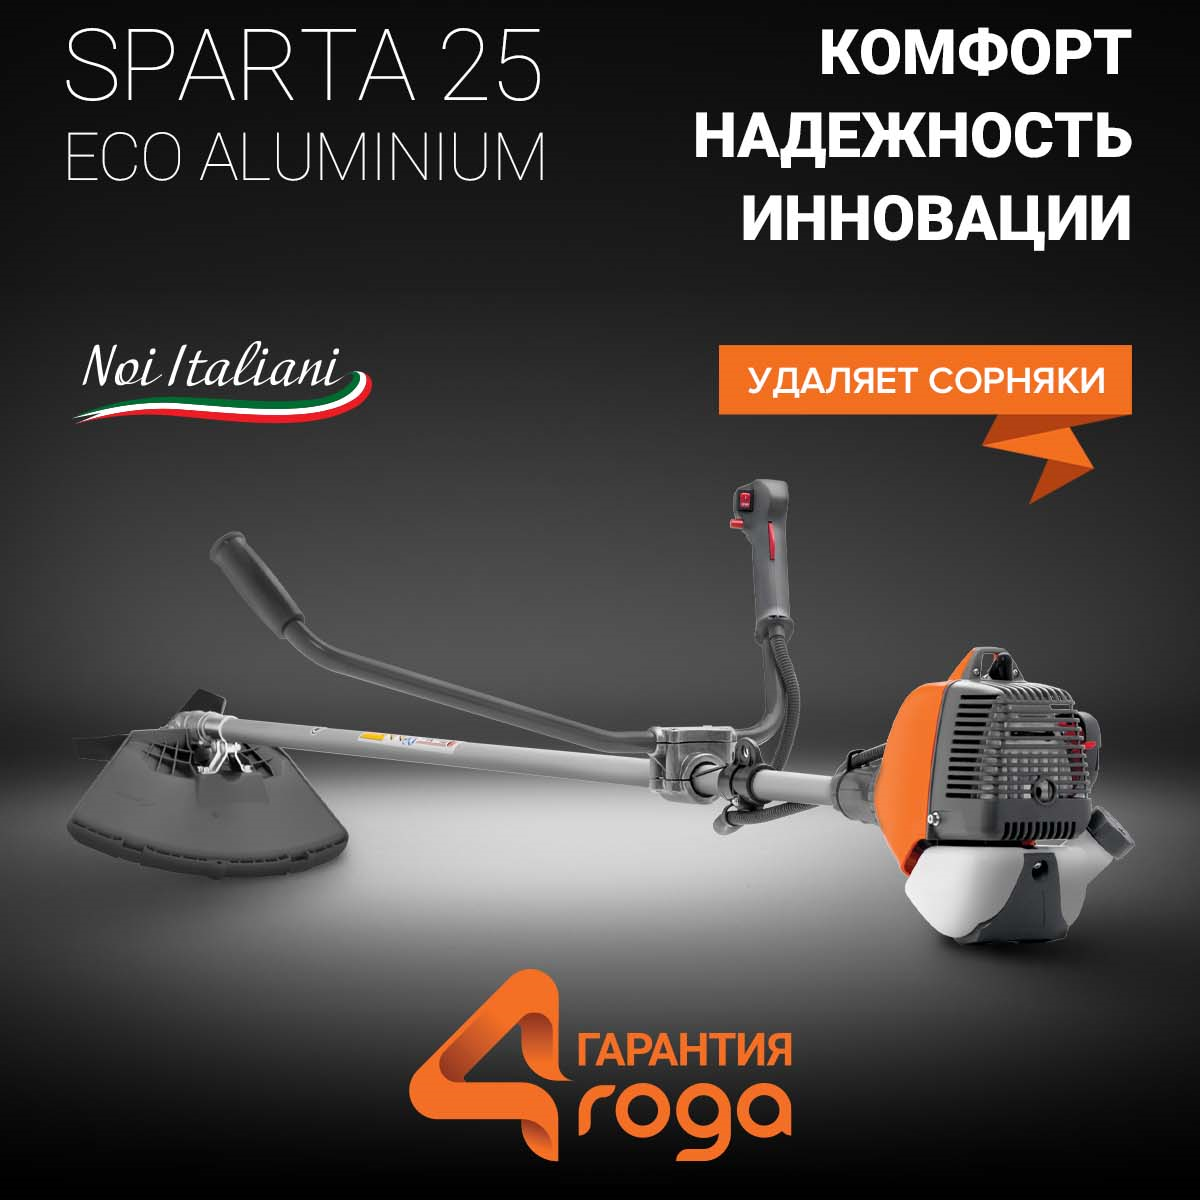 Sparta 25 Eco Aluminium_1